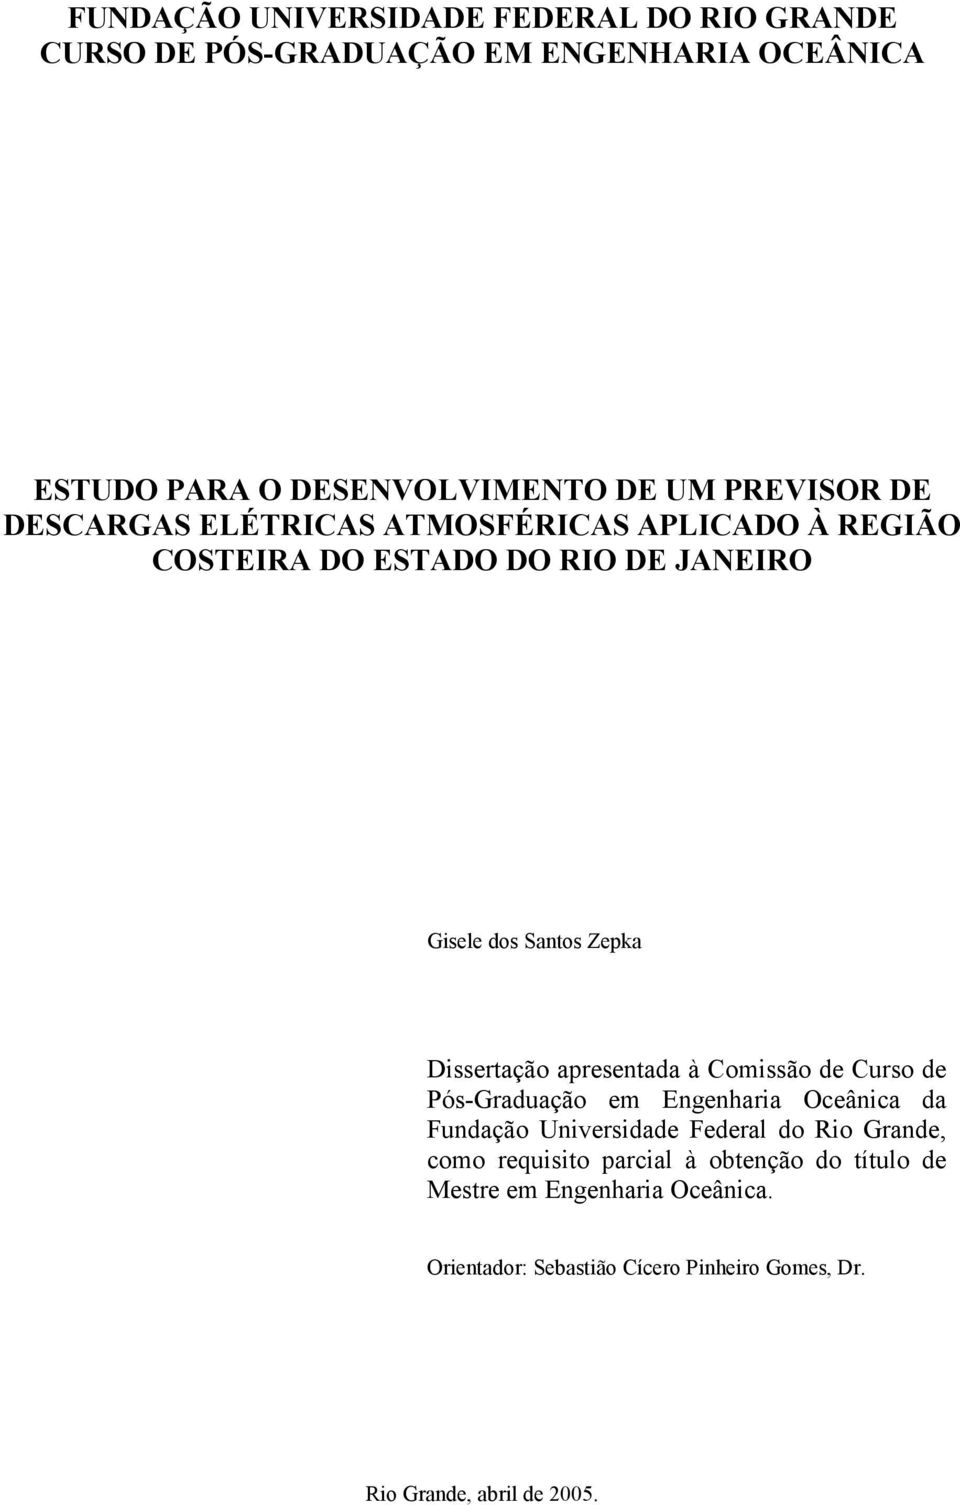 Dissertação apresentada à Comissão de Curso de Pós-Graduação em Engenharia Oceânica da Fundação Universidade Federal do Rio Grande,